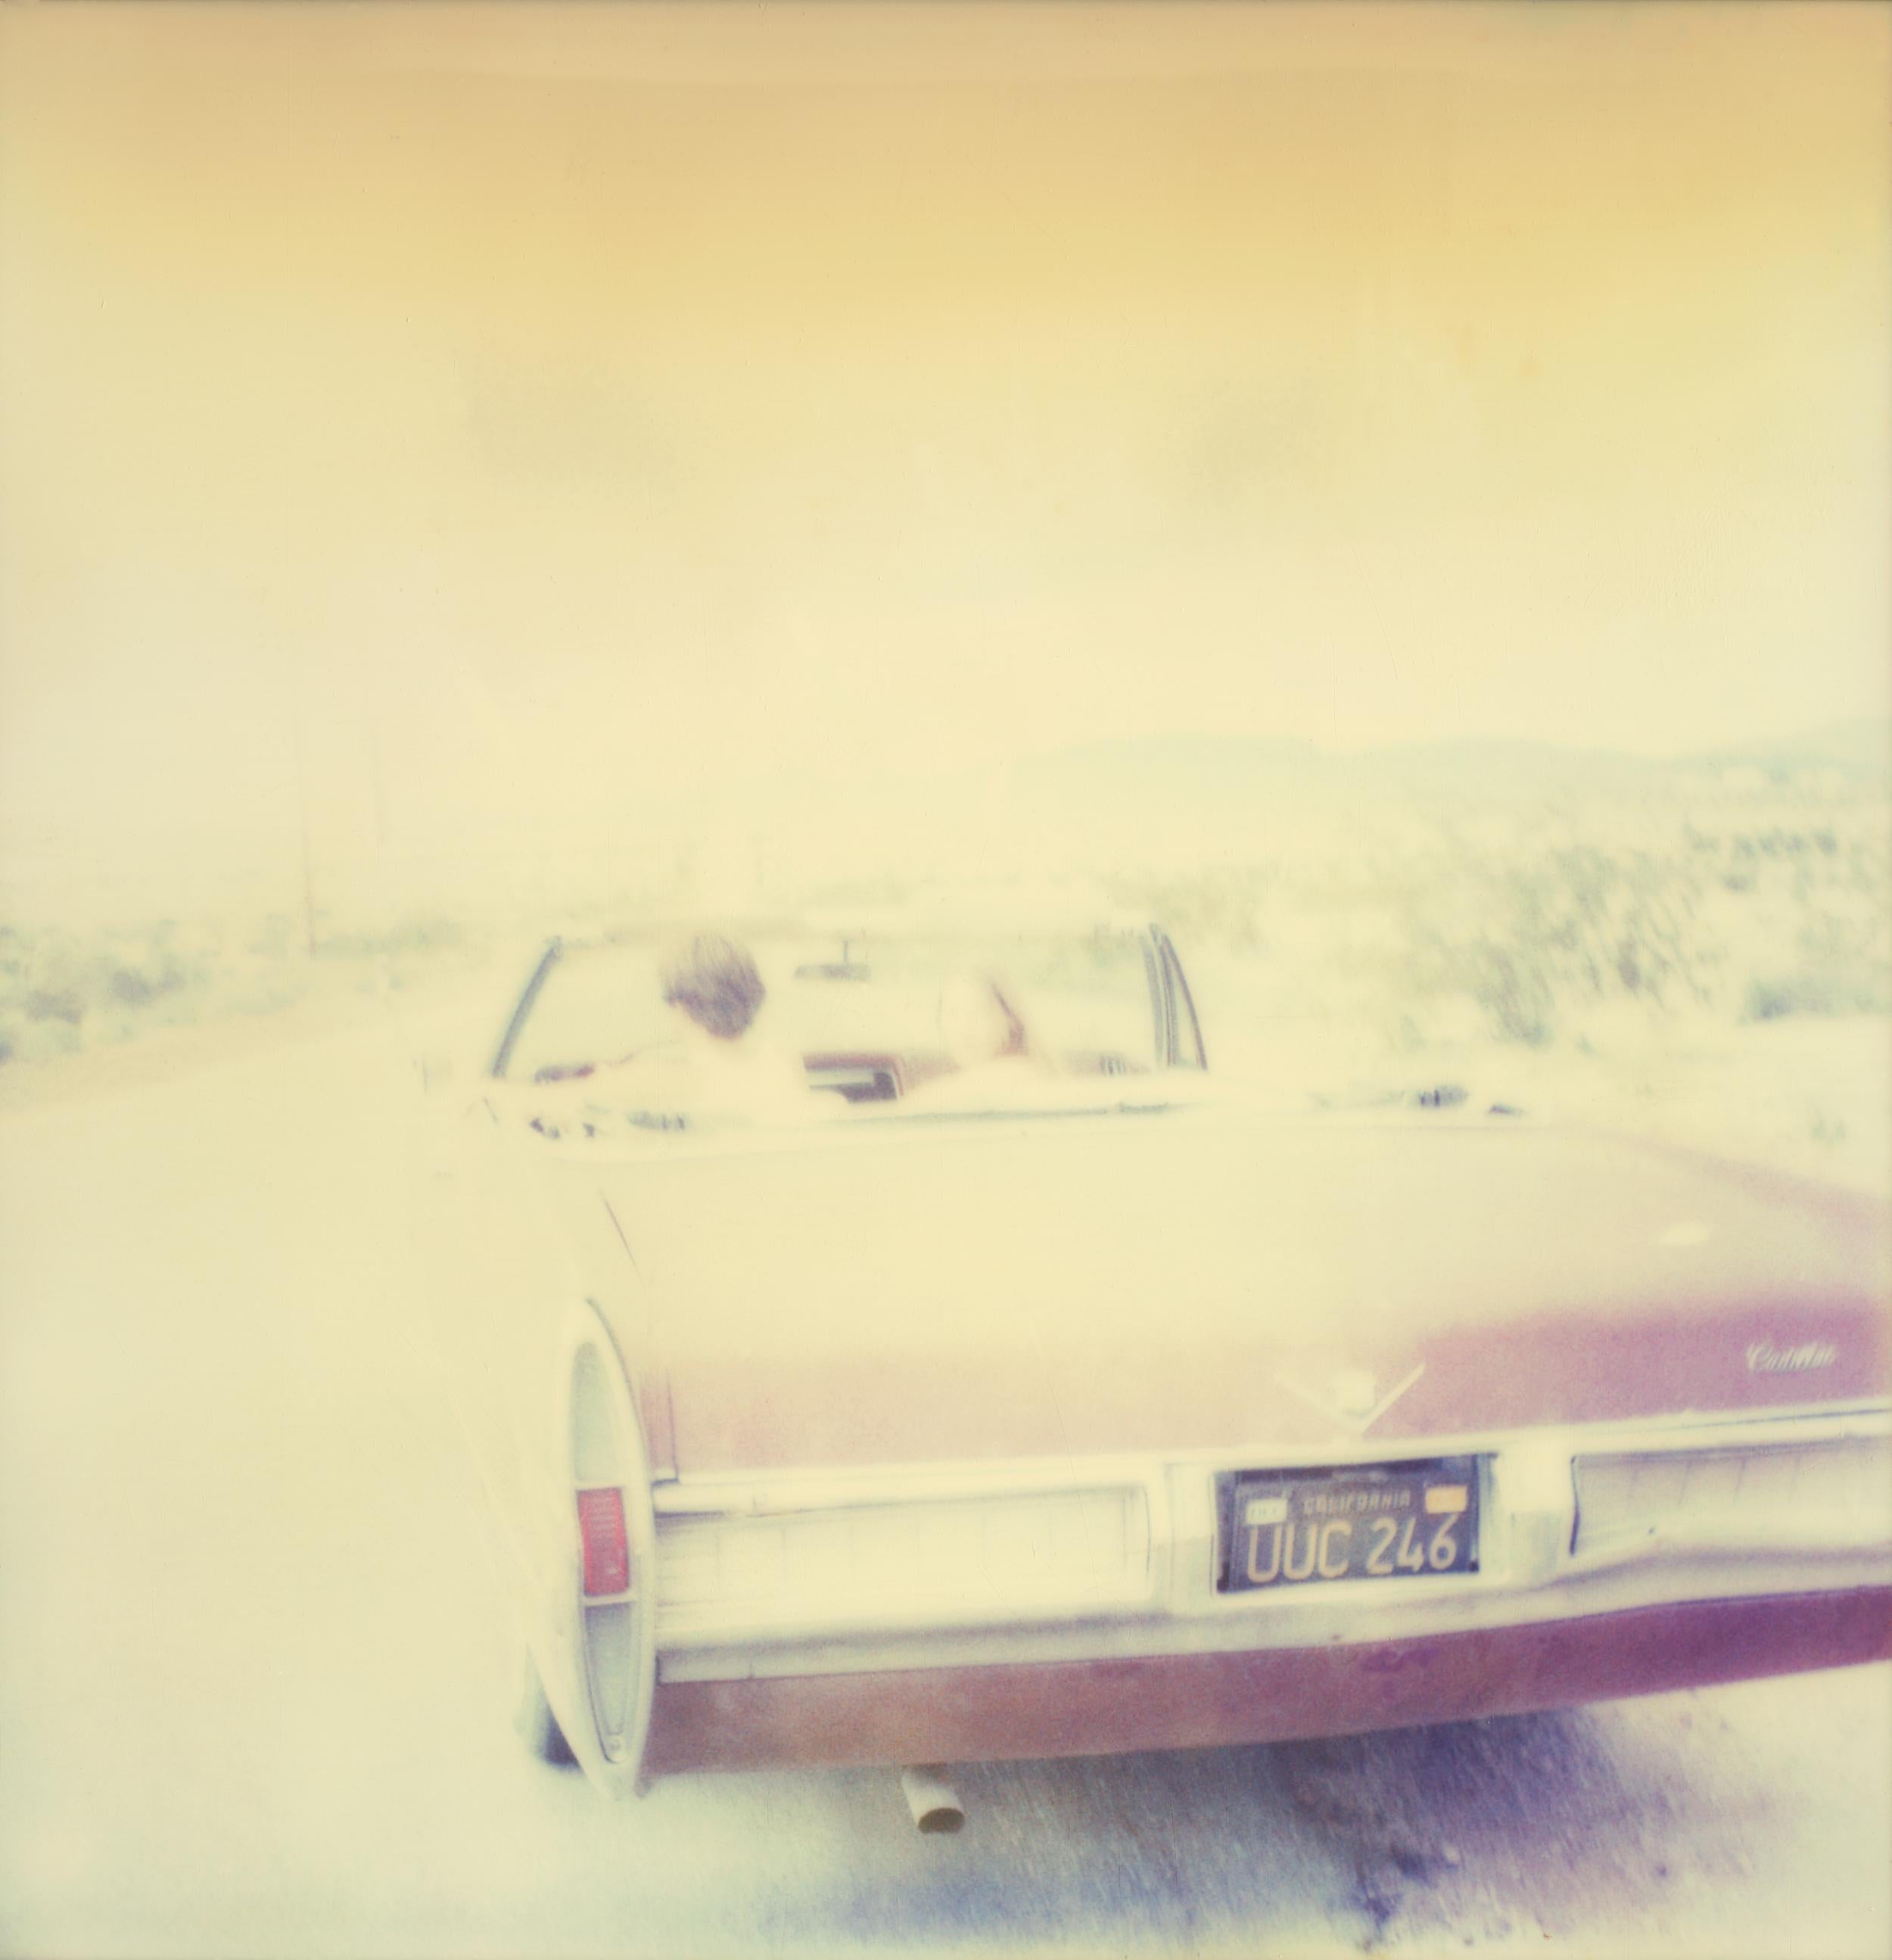 Leaving II (Sidewinder) - 8 pieces - Polaroid, 21st Century, Contemporary - Photograph by Stefanie Schneider